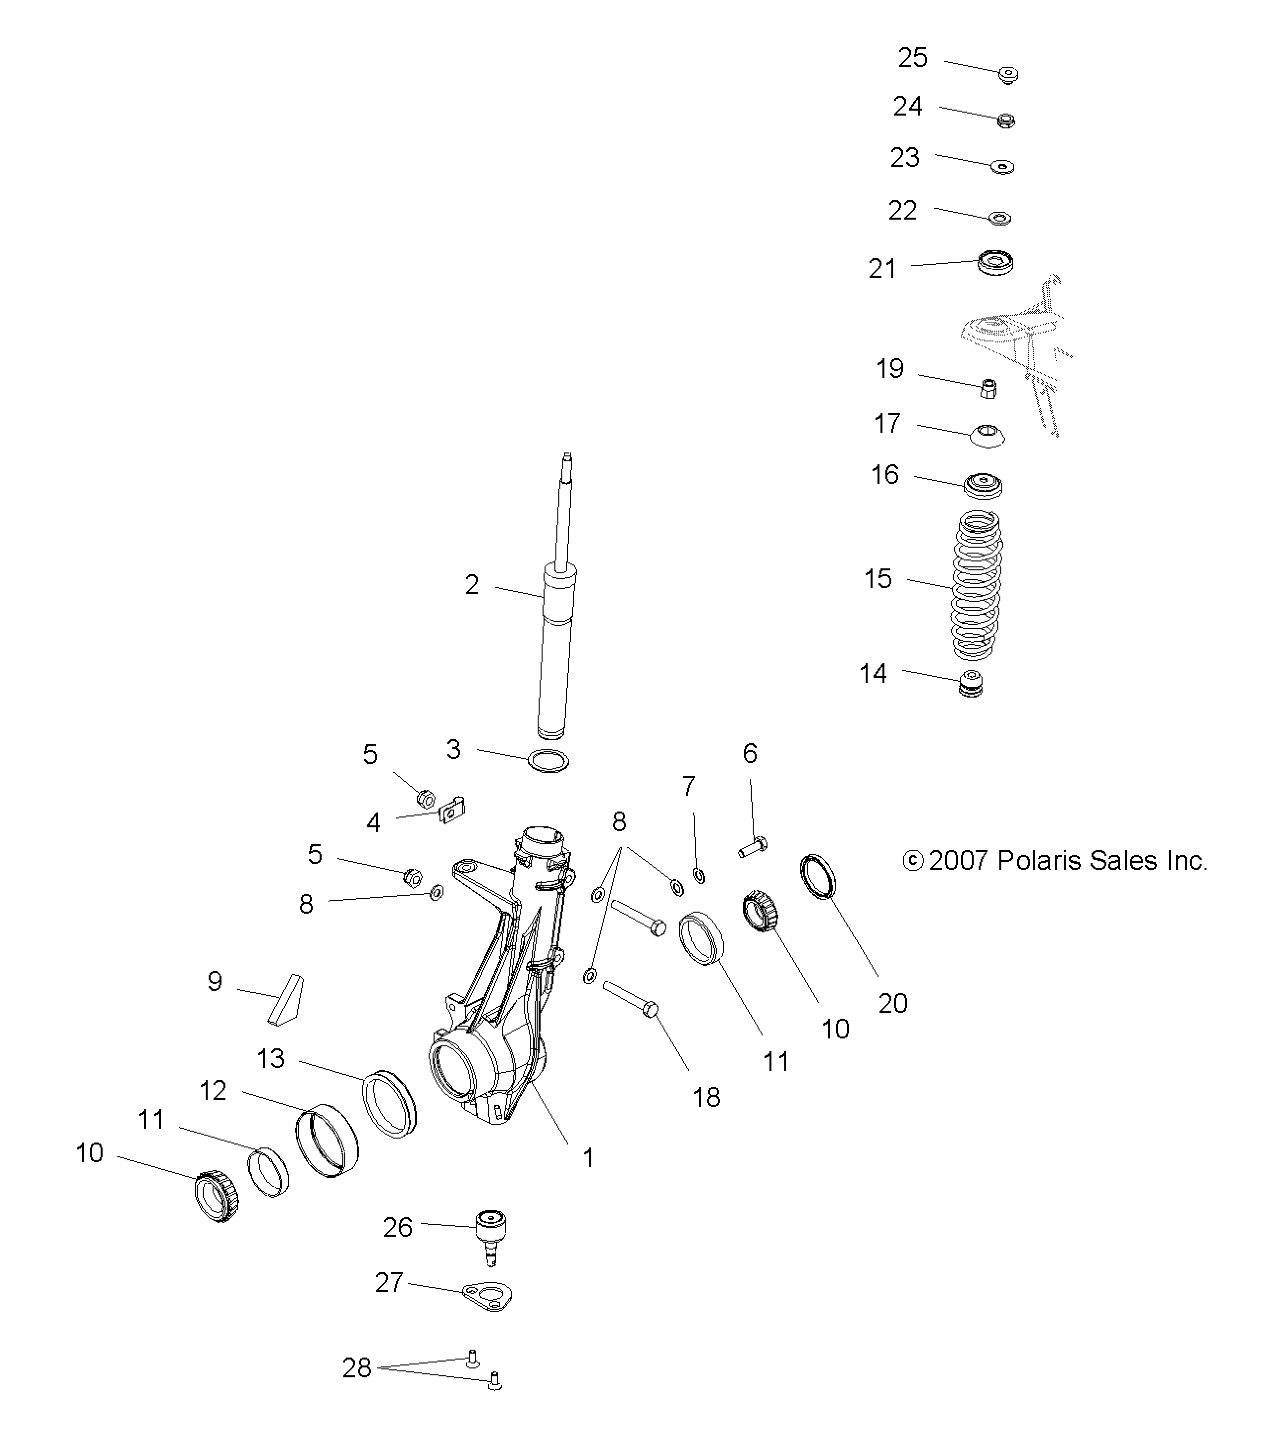 Foto diagrama Polaris que contem a peça 3610028